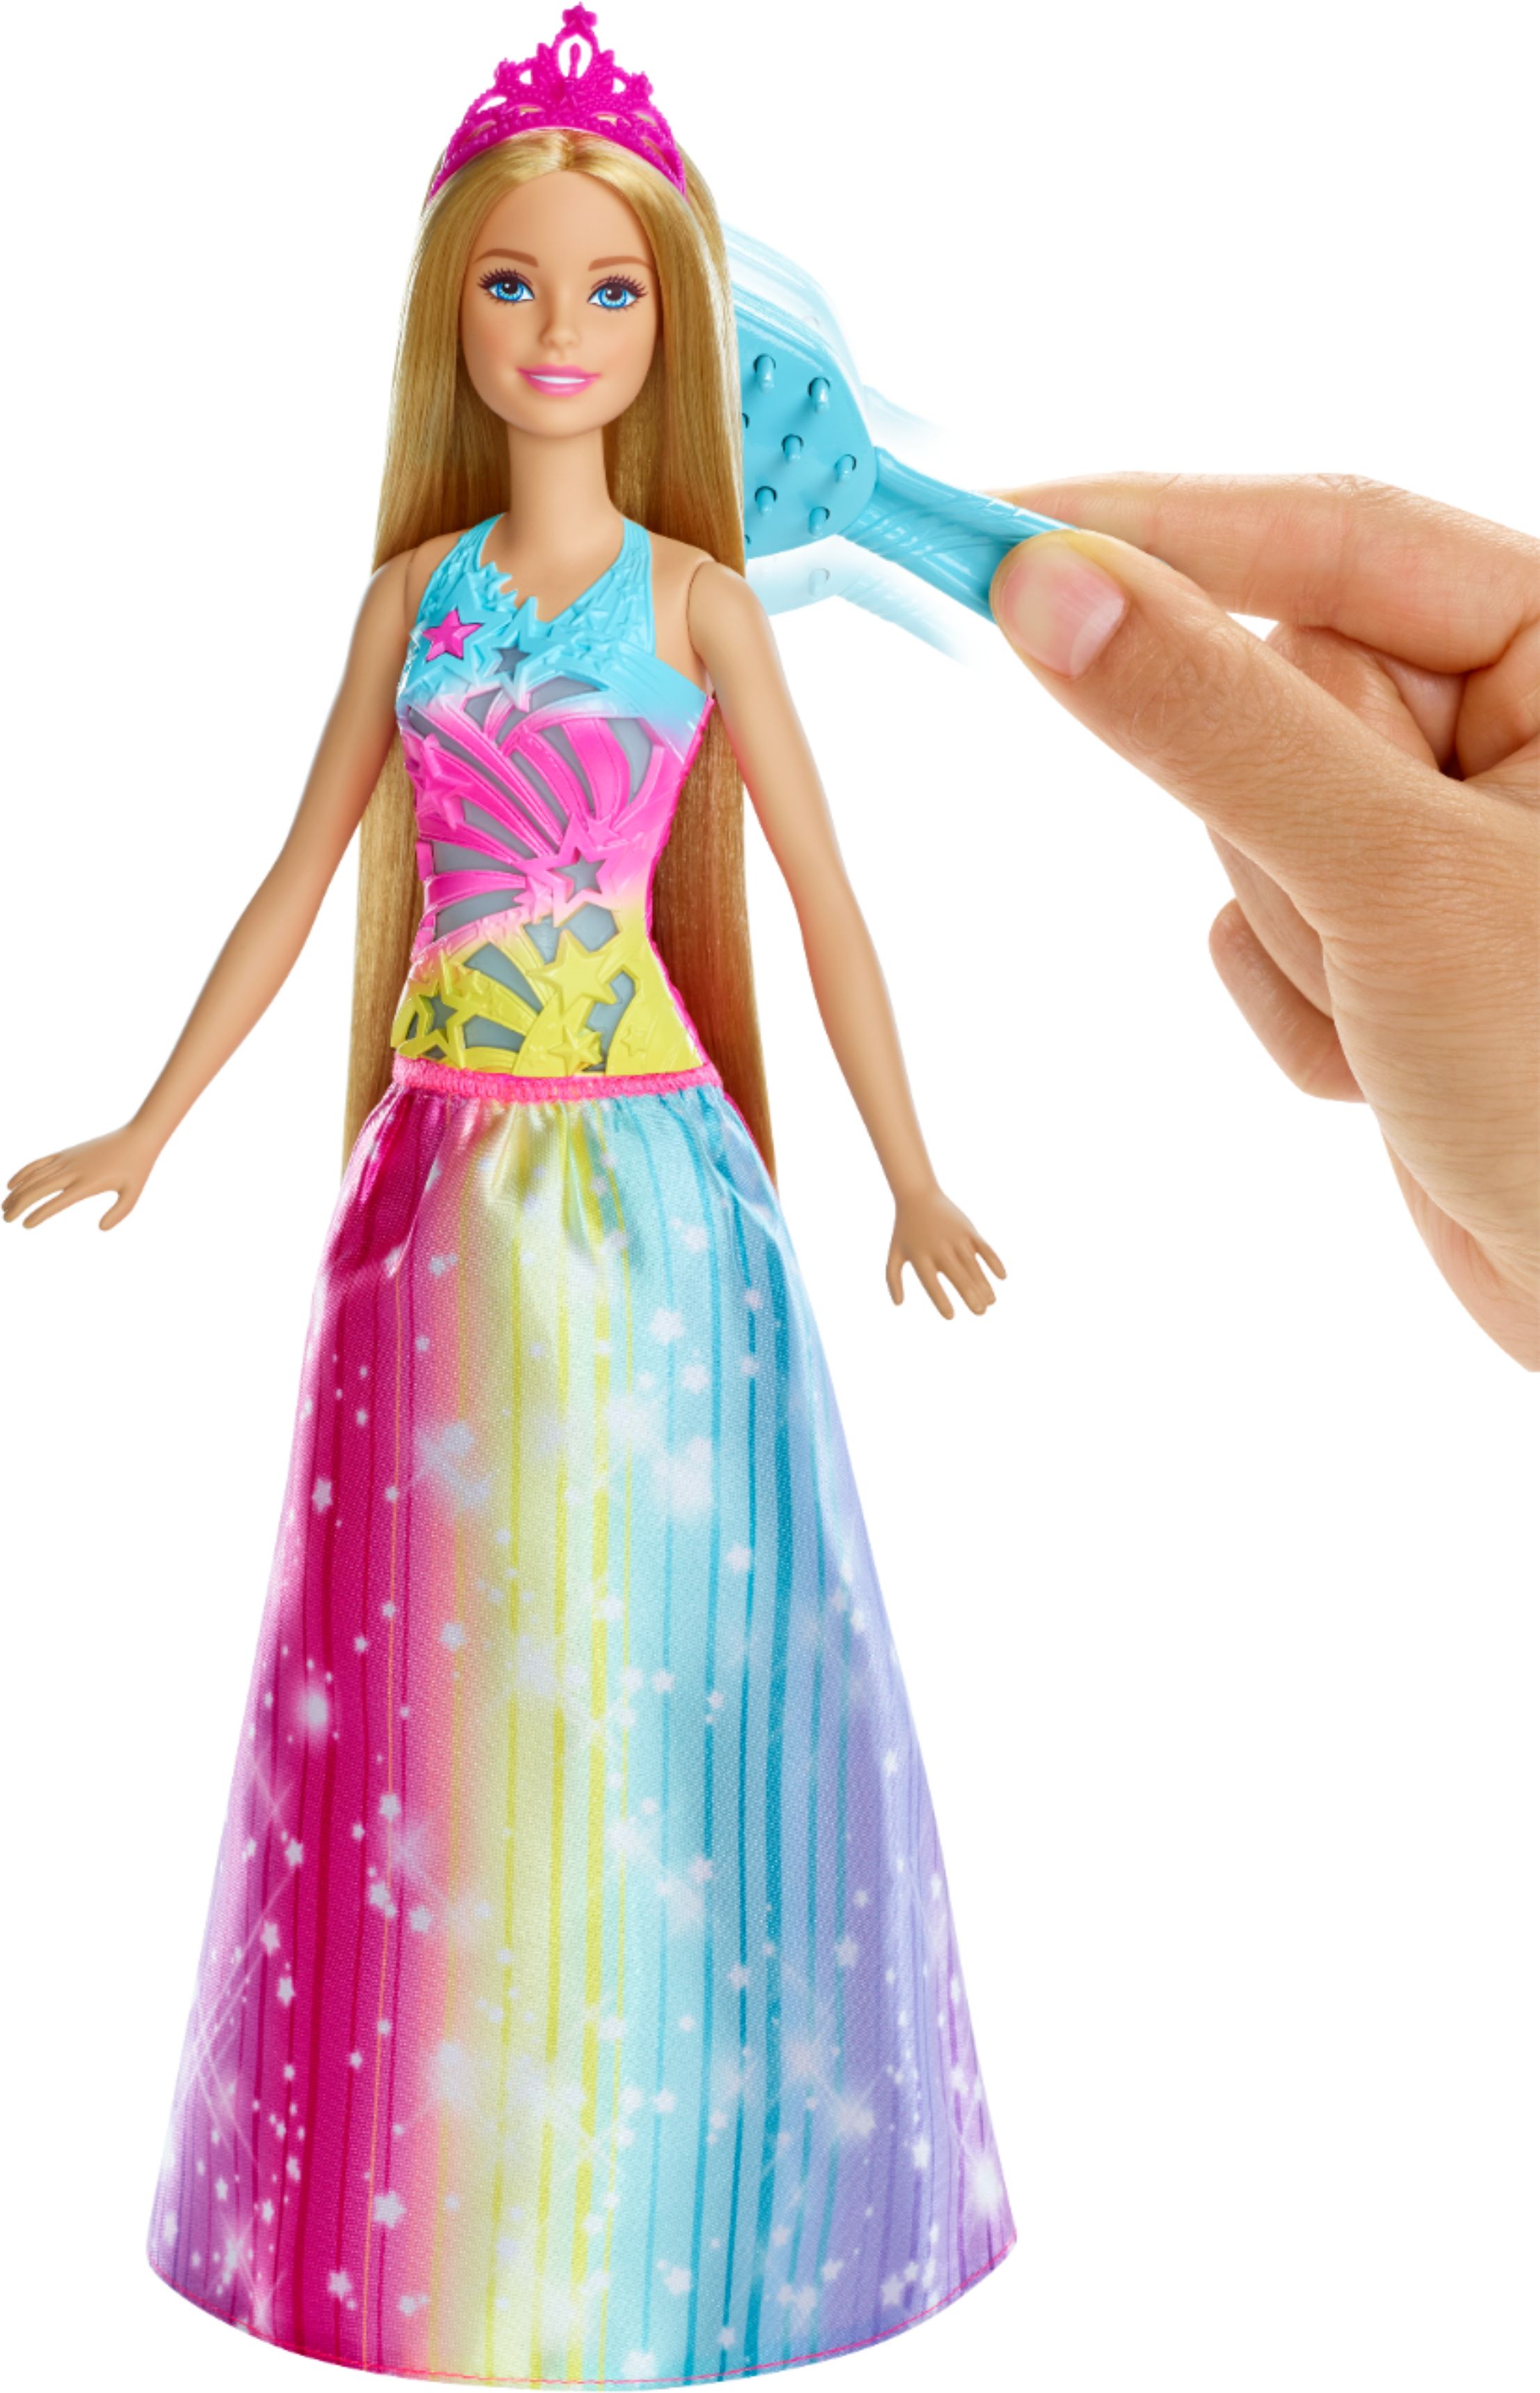 Stunning Mattel Barbie Rainbow Sparkle Hair Brand New in Original